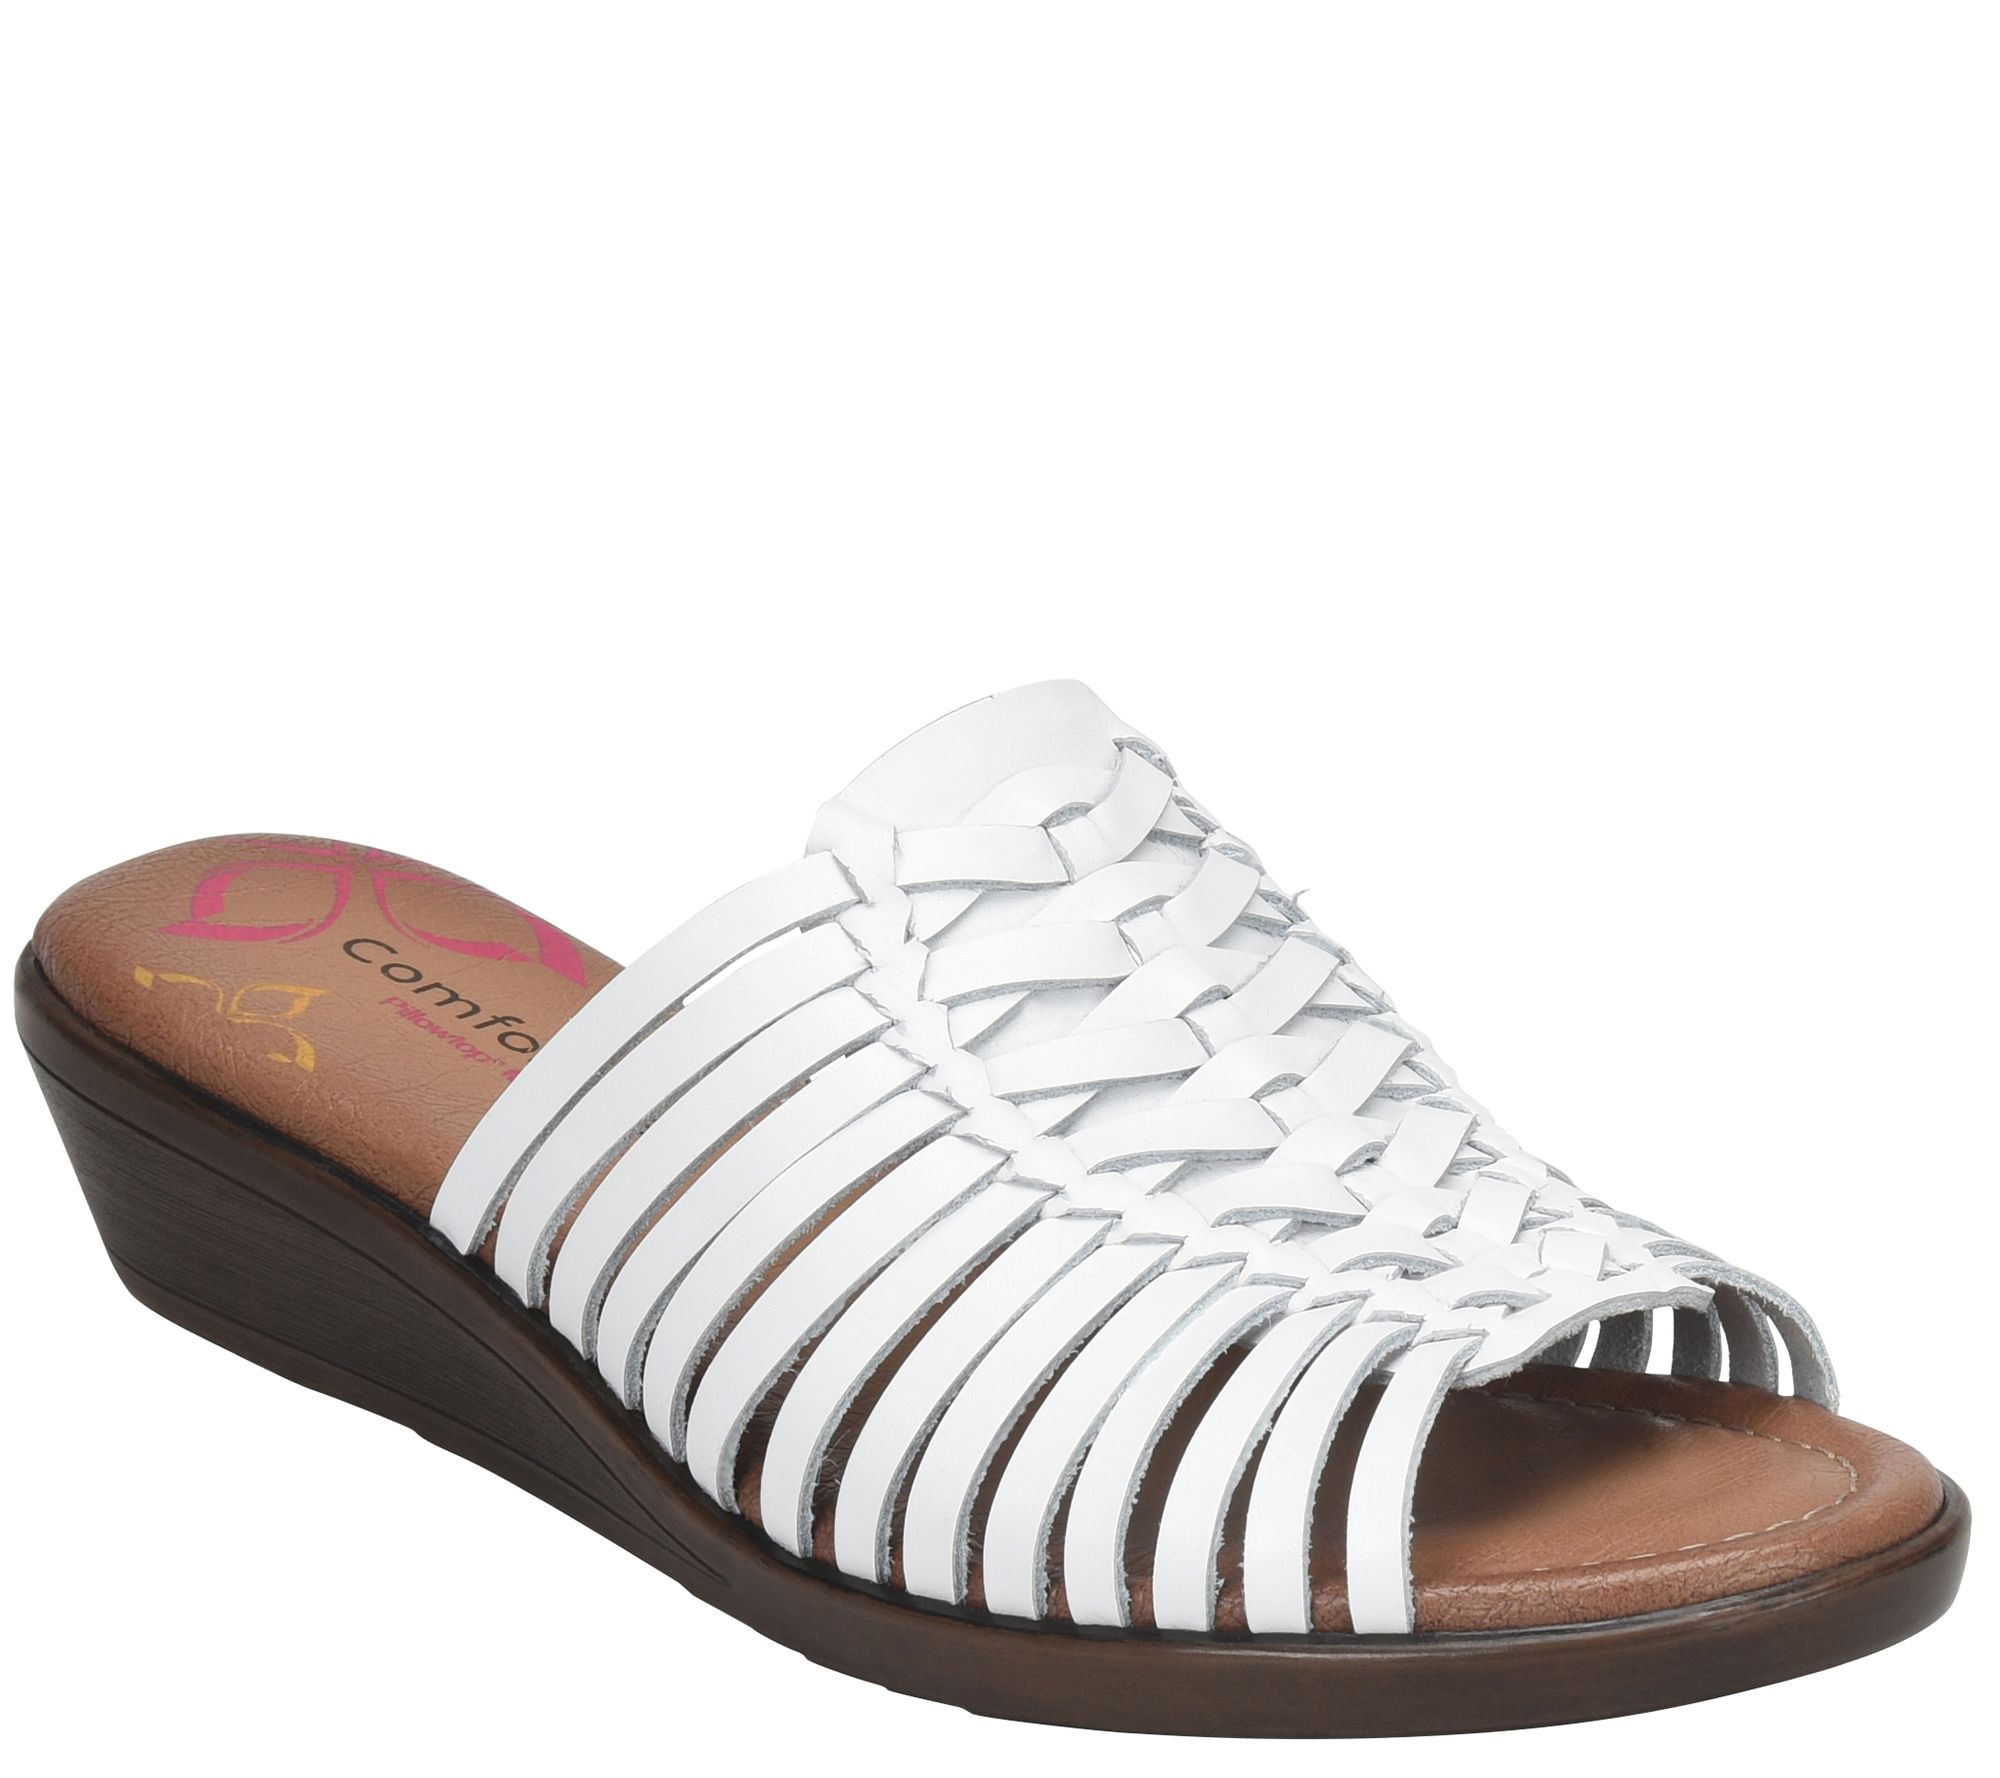 huarache wedge sandals